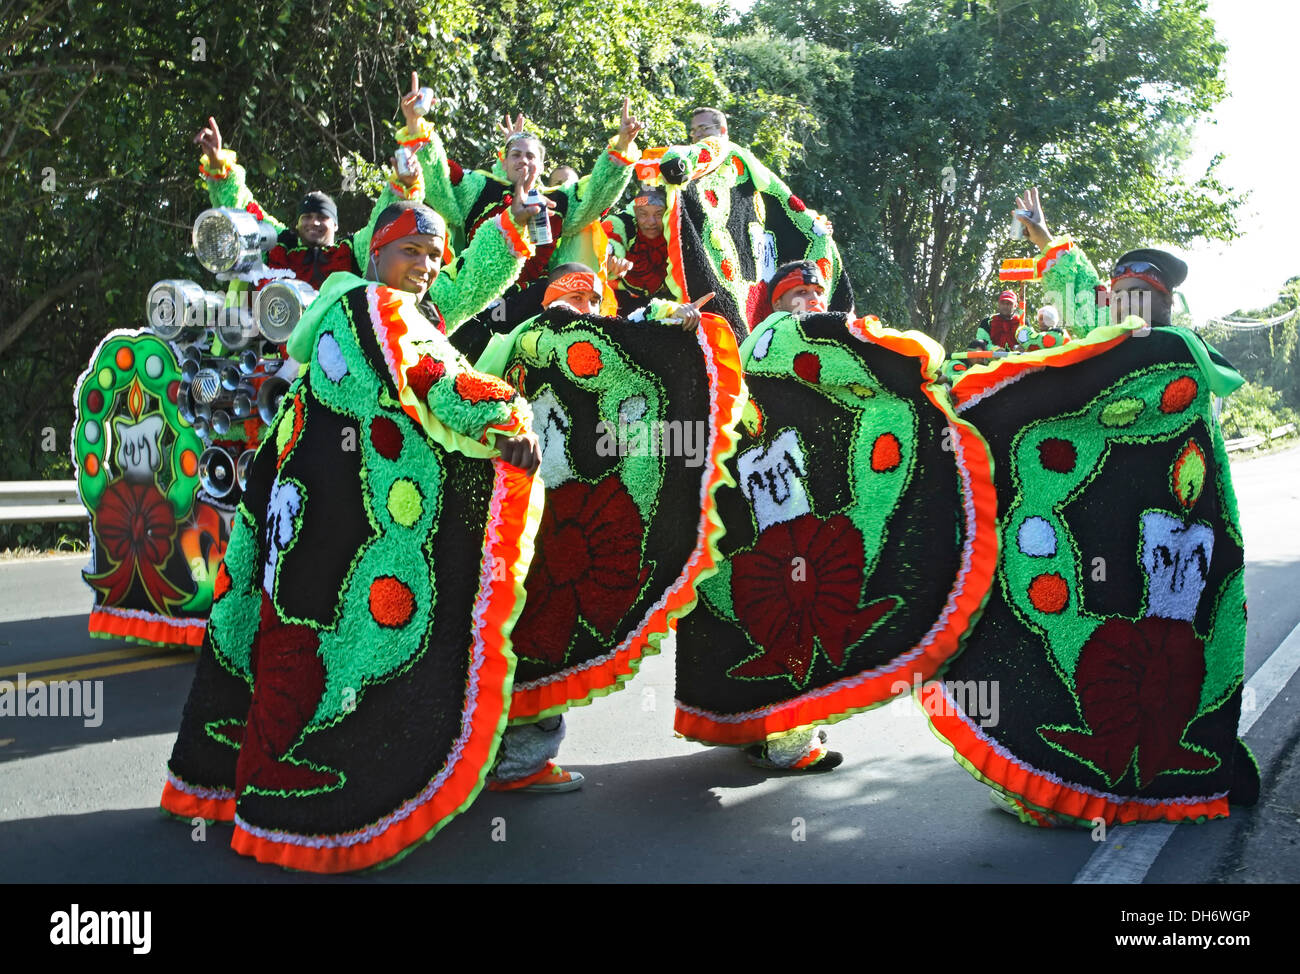 Men in costumes, Hatillo Mask Festival, Hatillo, Puerto Rico Stock Photo -  Alamy